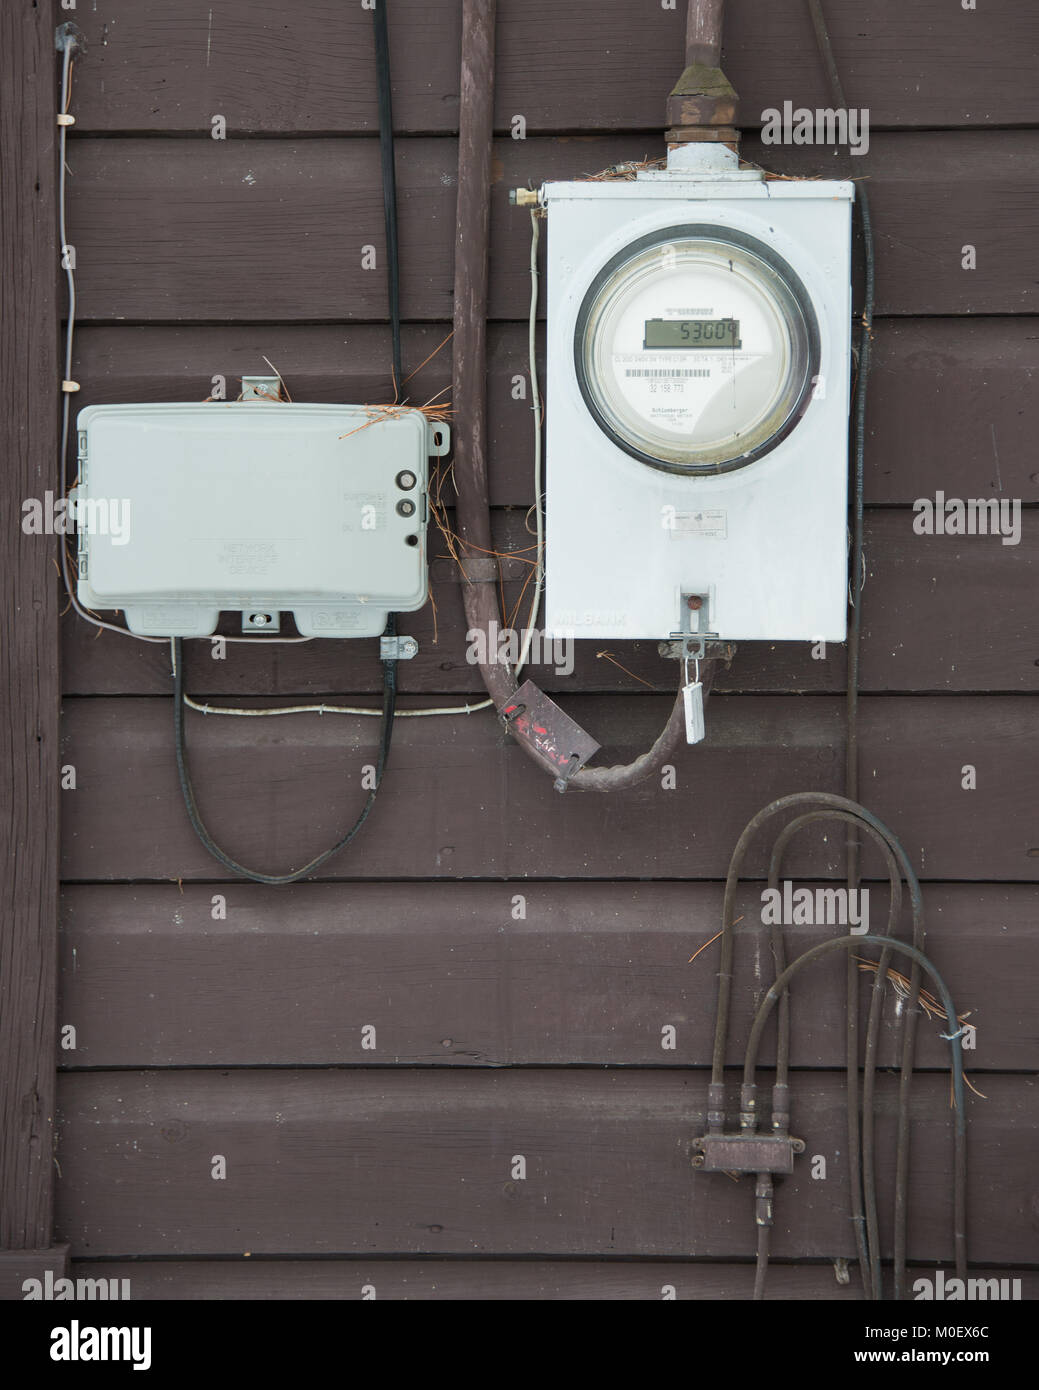 Caja de conexiones con cables para reparar sistemas eléctricos en casa u  oficina sobre fondo blanco.